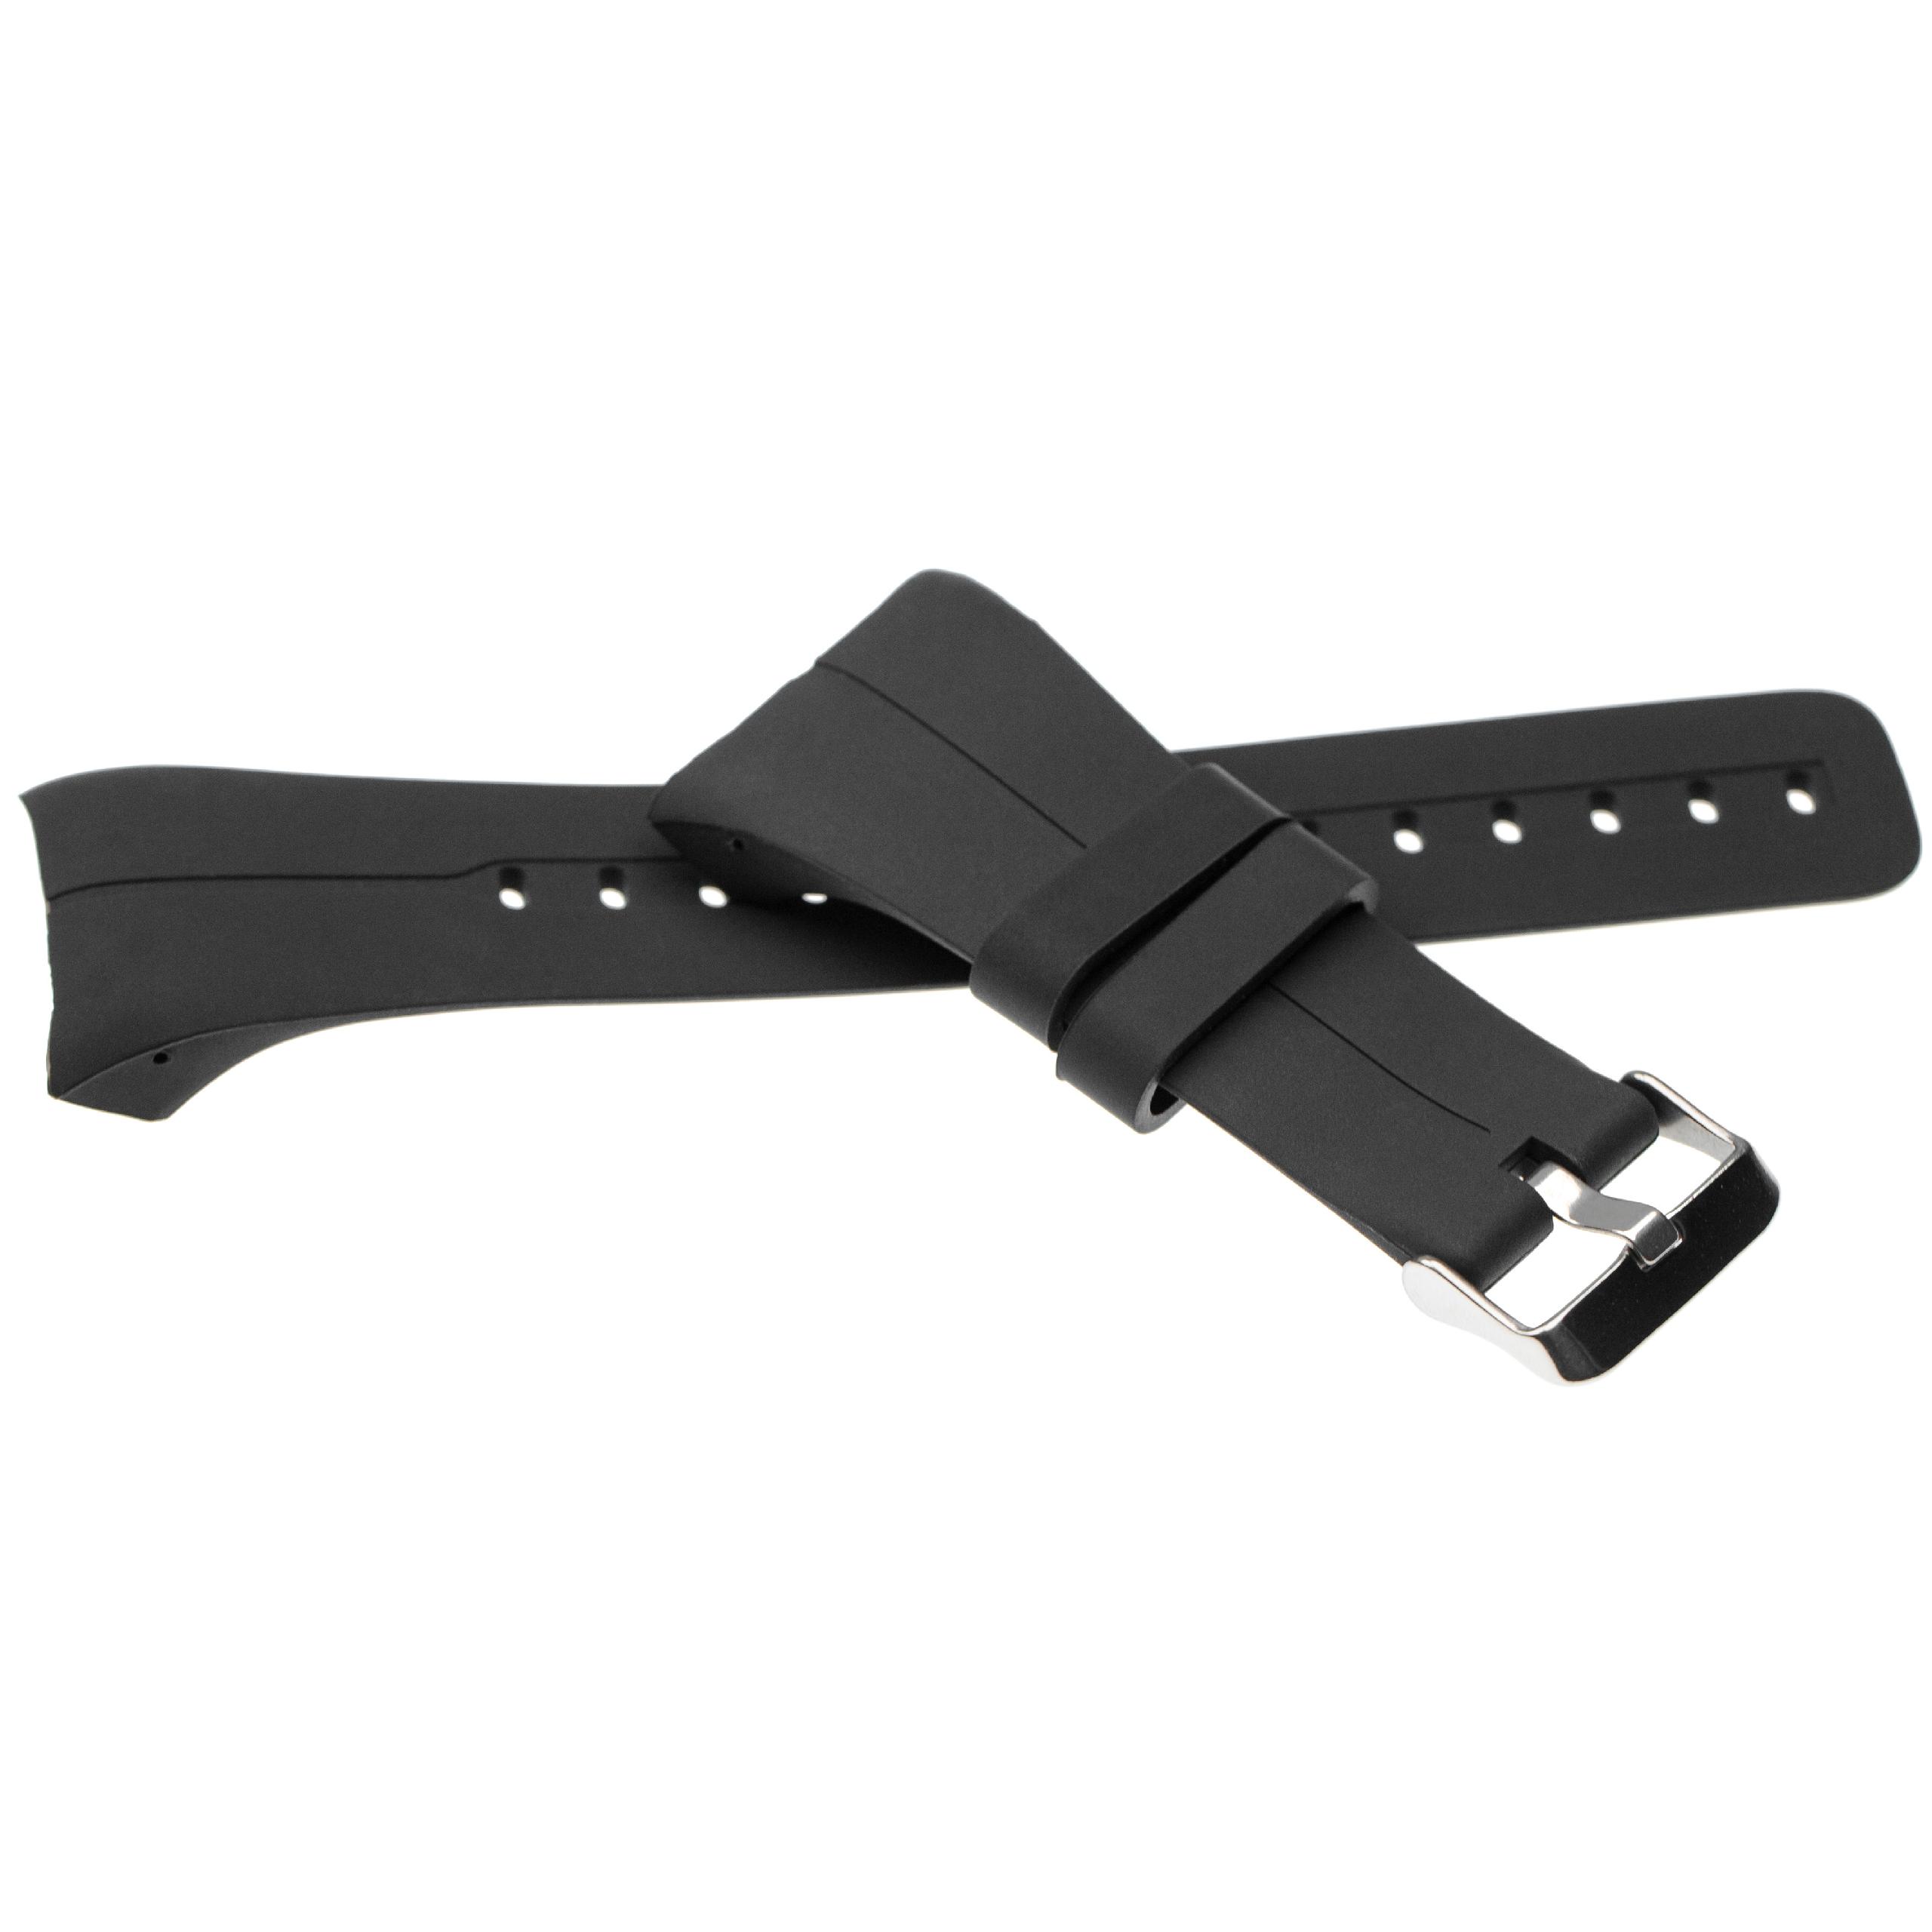 Bracelet pour montre intelligente Polar - 14,5 + 8,9 cm de long, silicone, noir